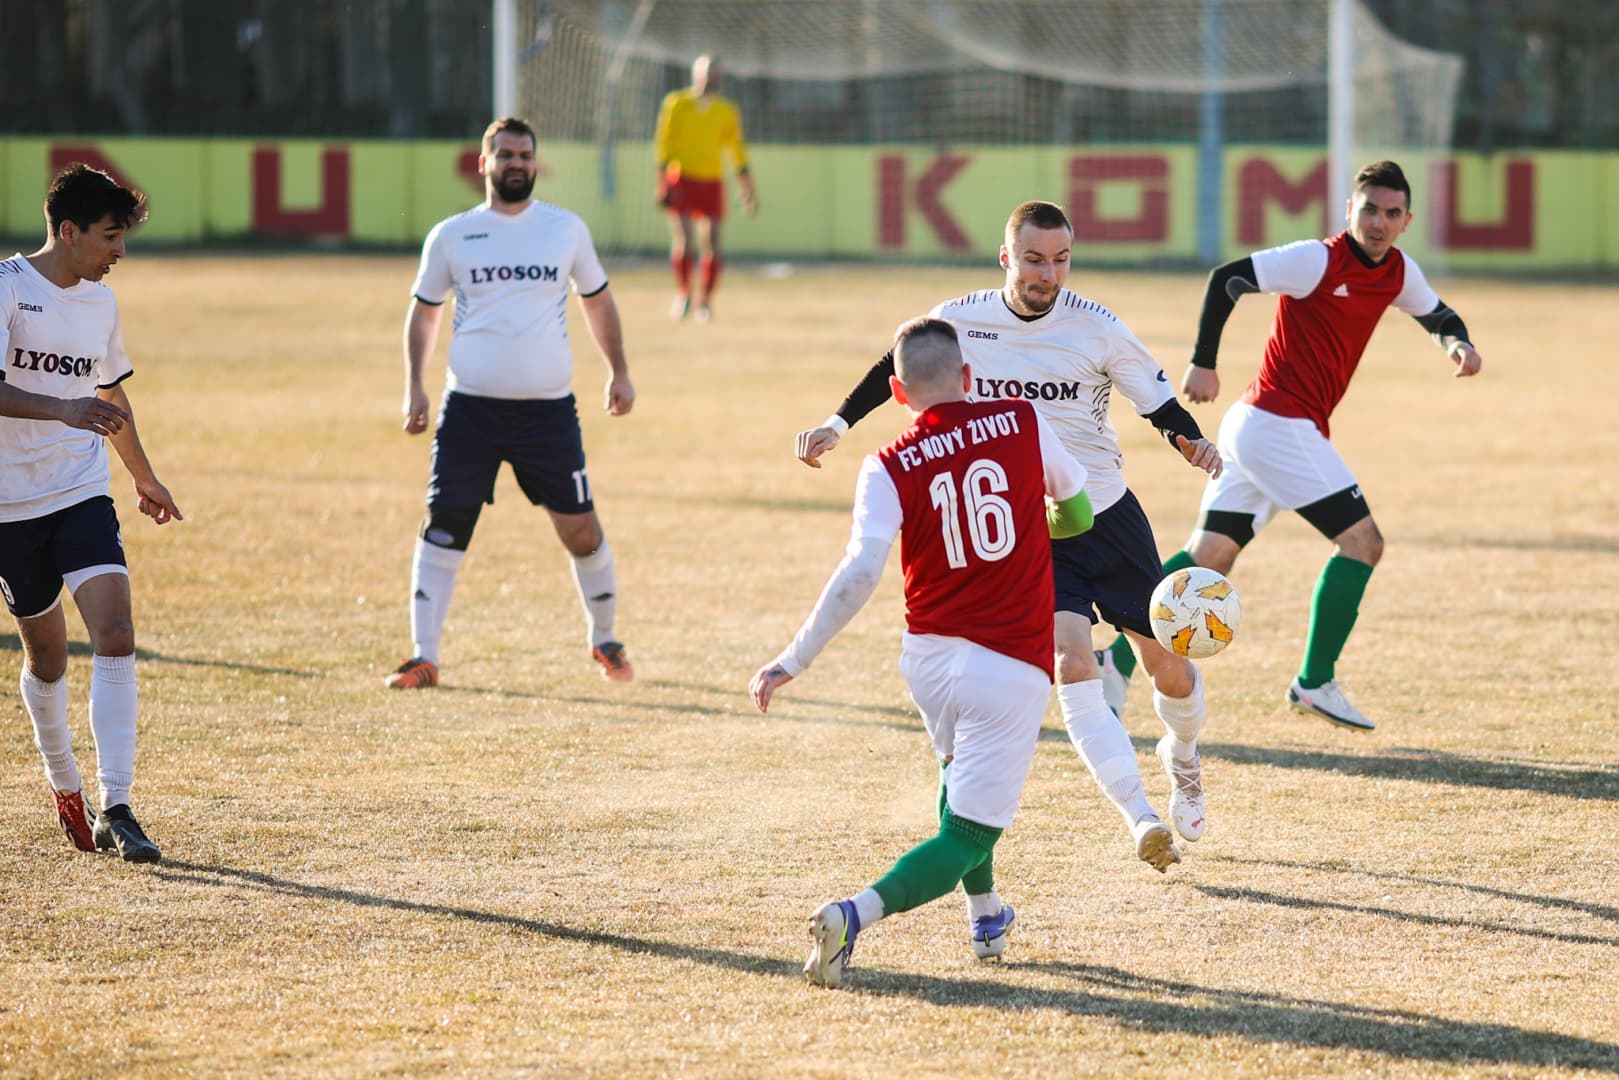 Nyugat-szlovákiai V. liga, Keleti csoport, 34. forduló: Pozbán tizenhétszer (!) rezdült a szímőiek hálója